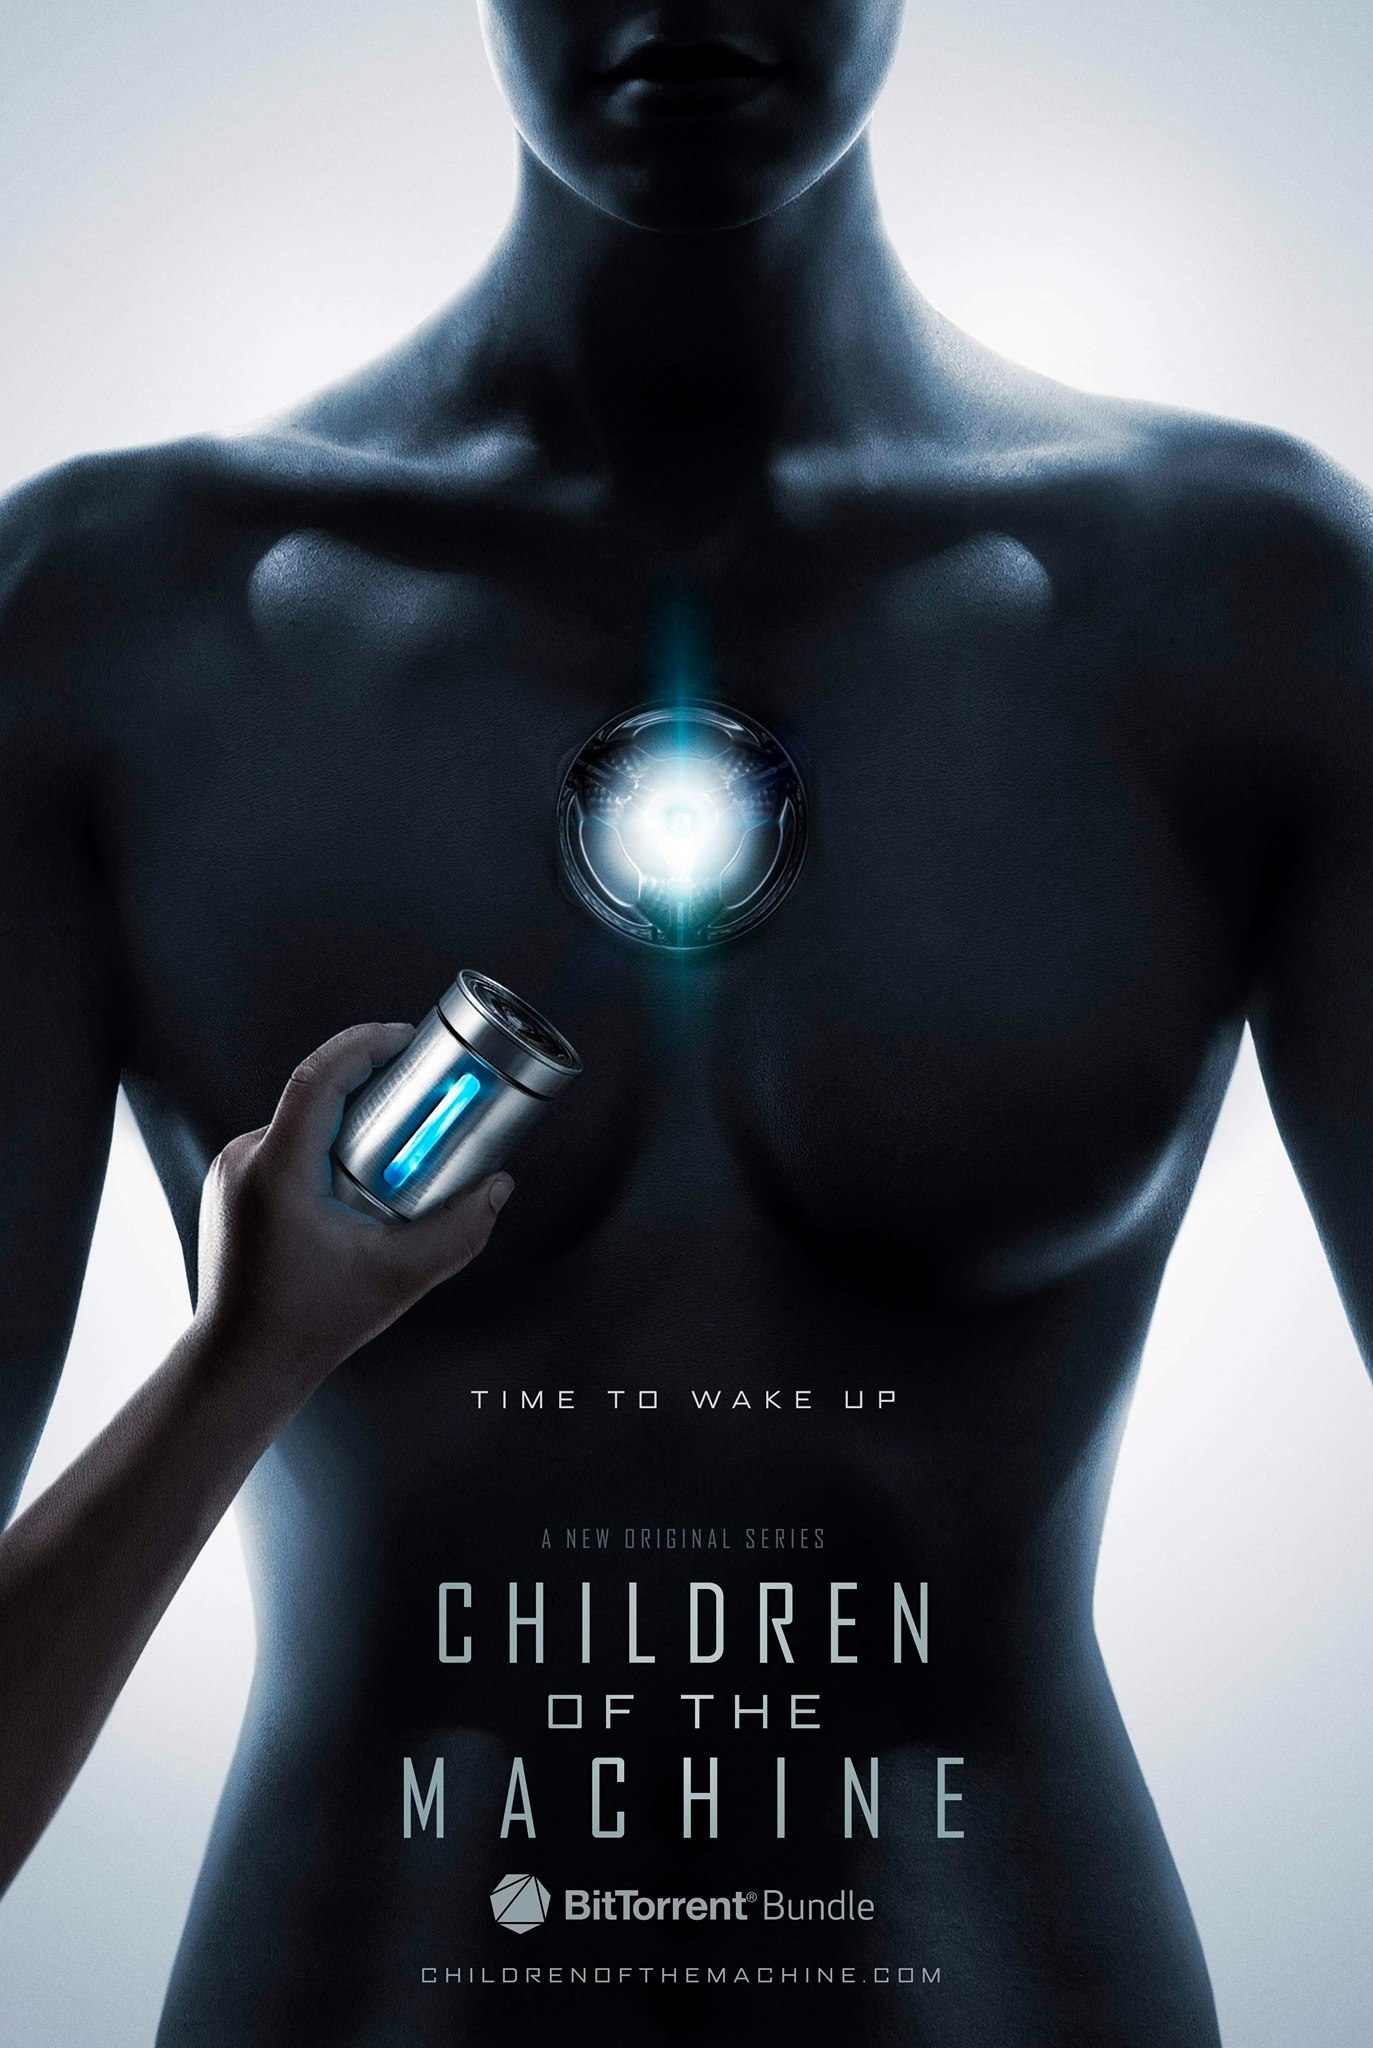 BitTorrent unveils its first original TV series Children of the Machine